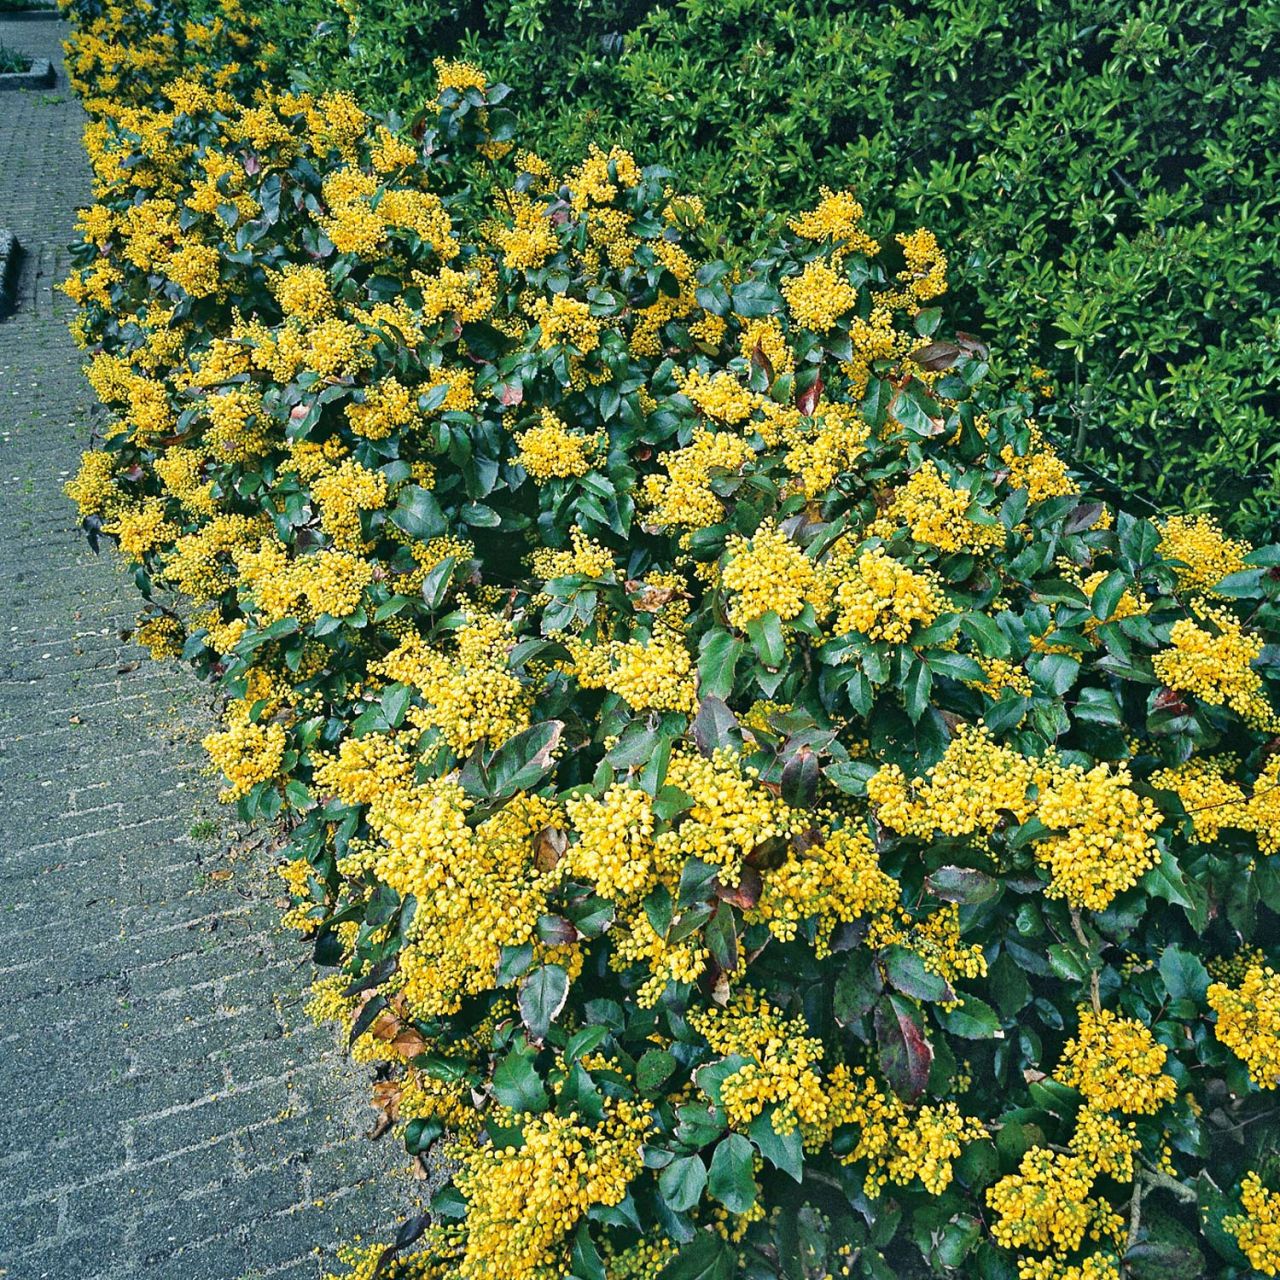  Immergrüne Mahonie - Mahonia aquifolium